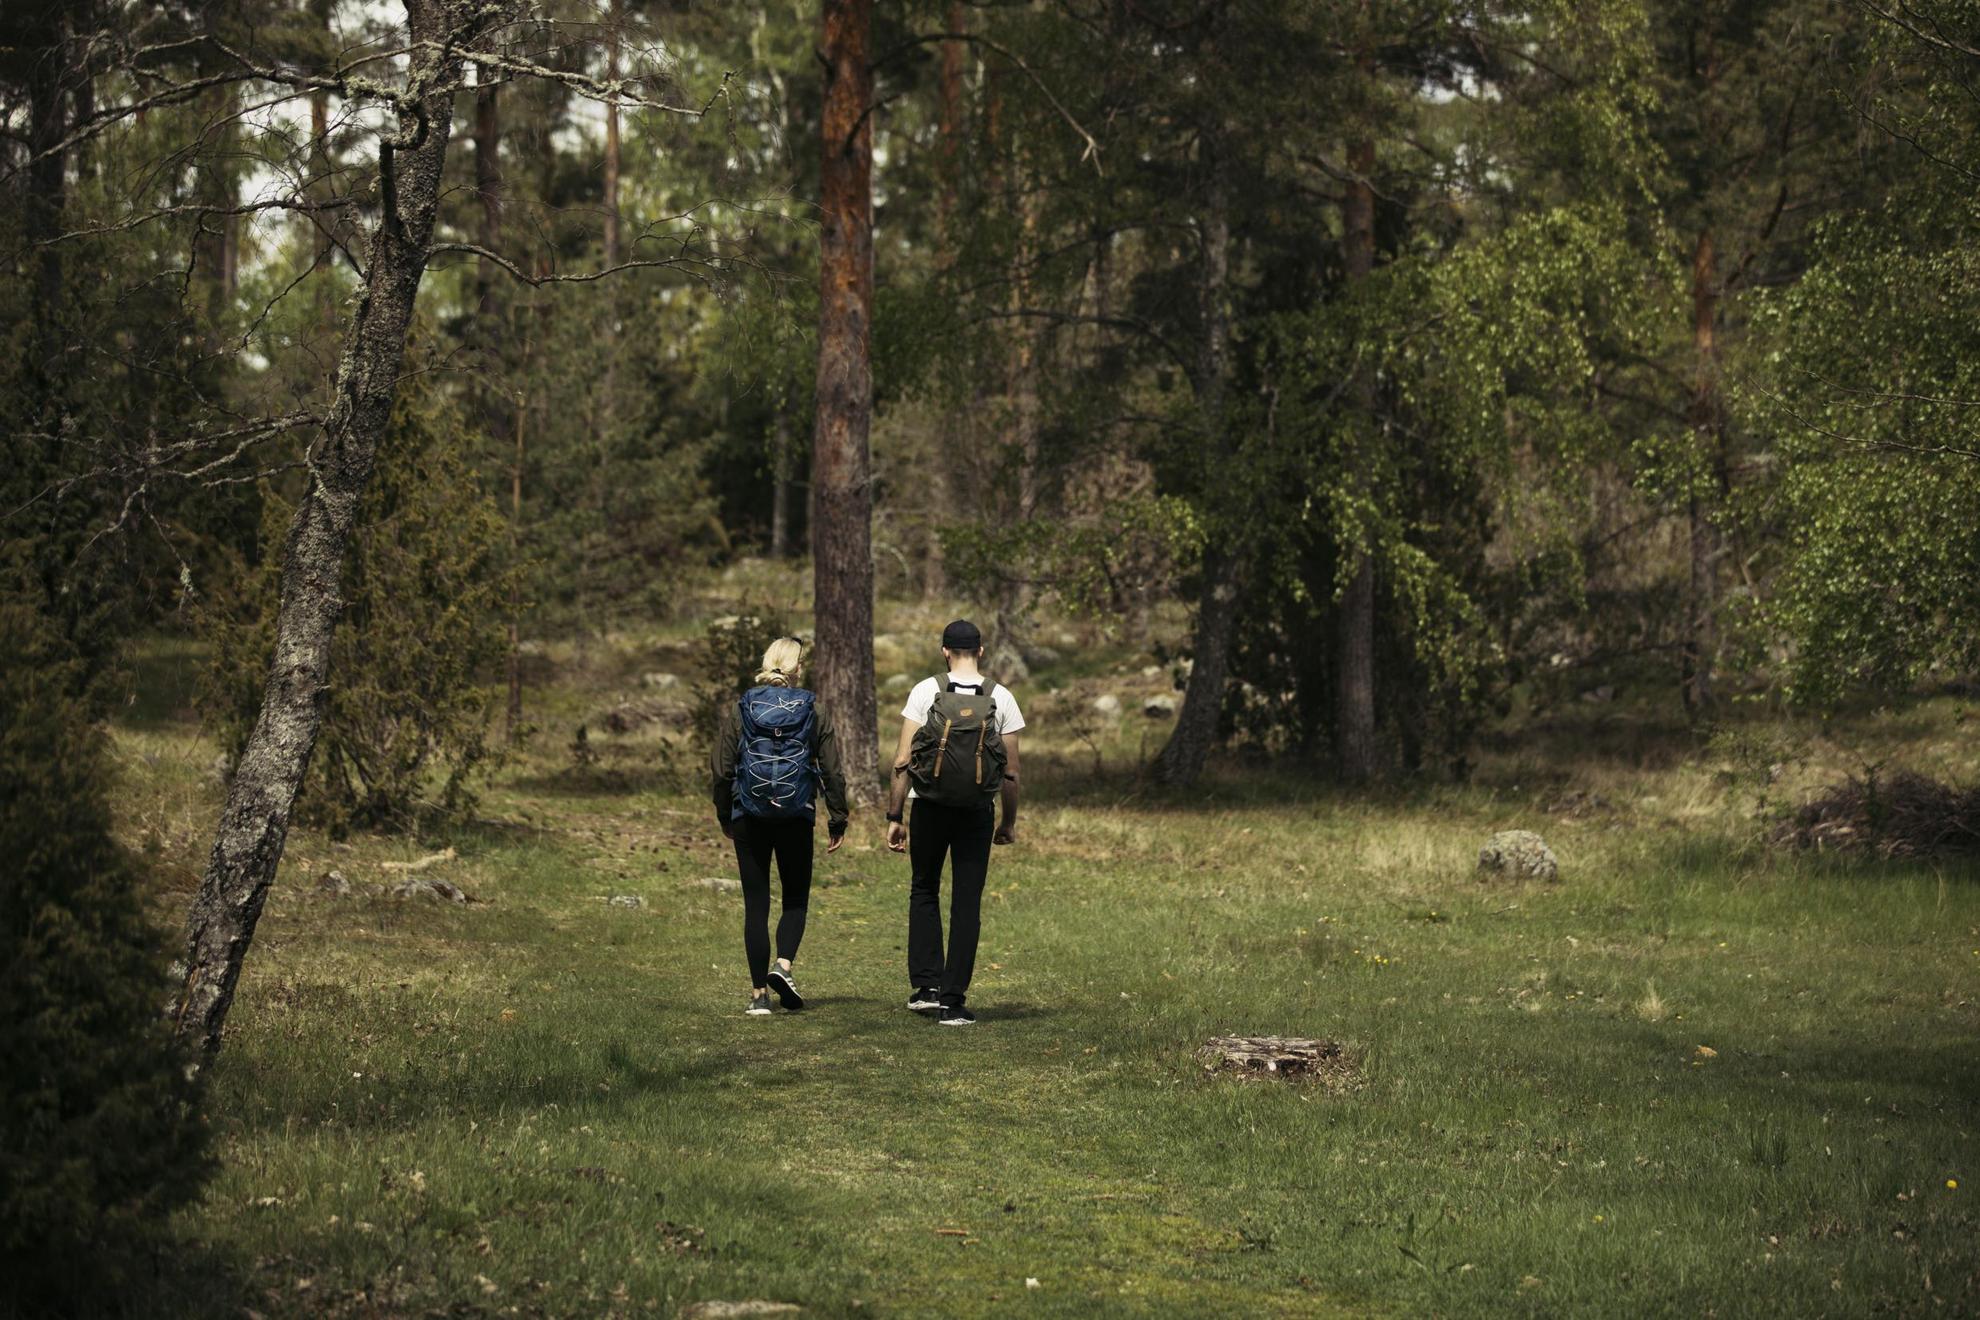 Twee mensen met rugzakken lopen in een weiland omgeven door groen.